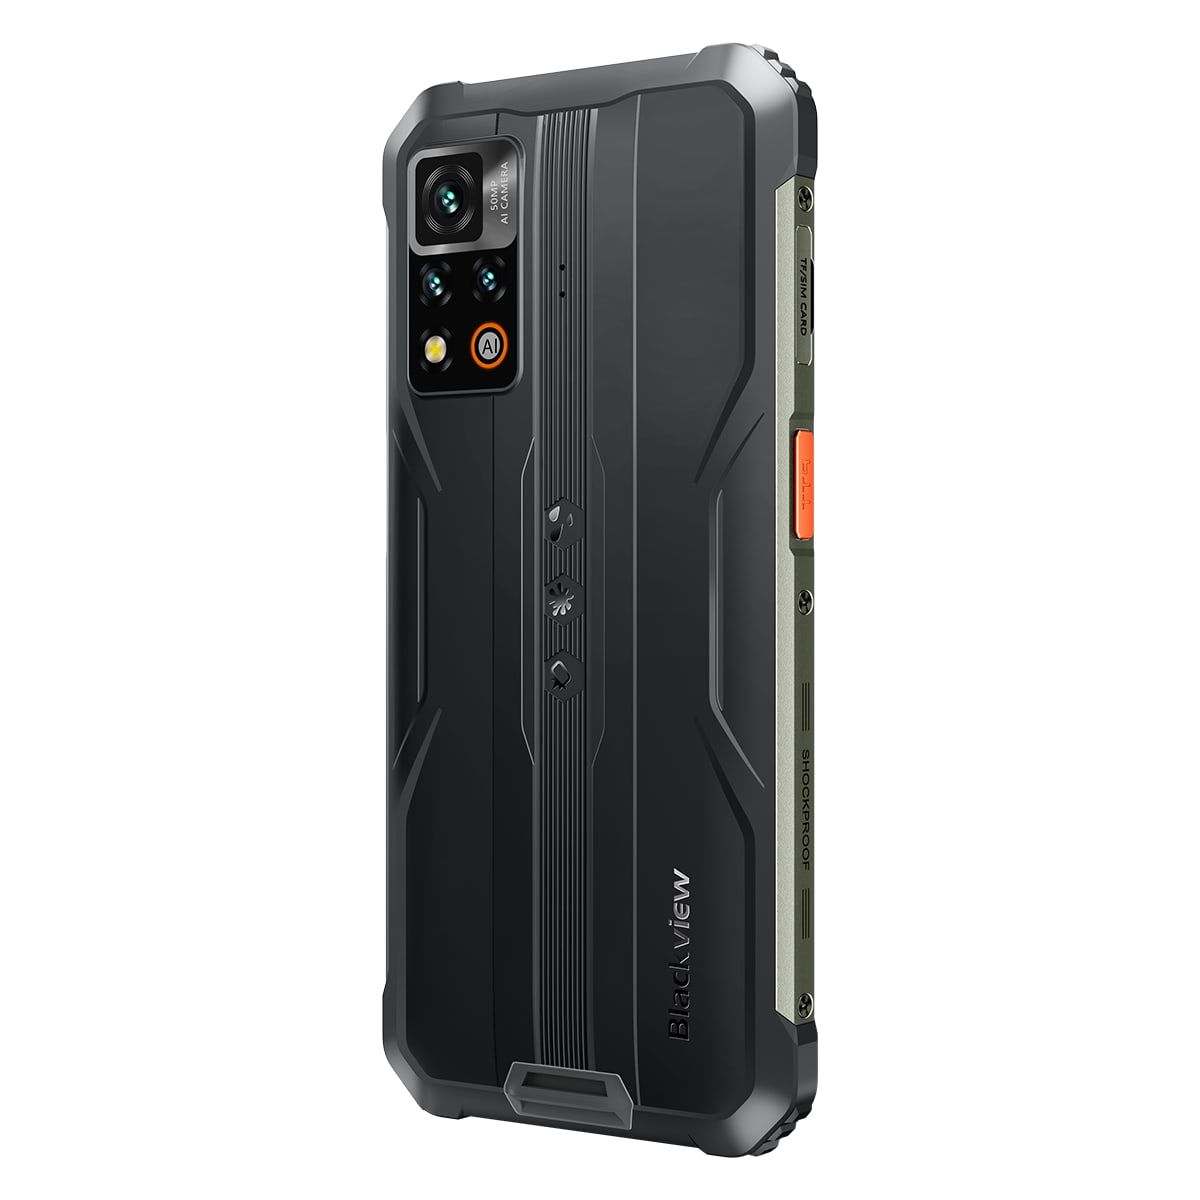 Blackview BV9200, Smartphone étanche - Nouveauté 2023 - Android 12, Photo 50 Mpx, Mémoire de 256Go, 8Go de RAM, NFC, Charge Sans Fil